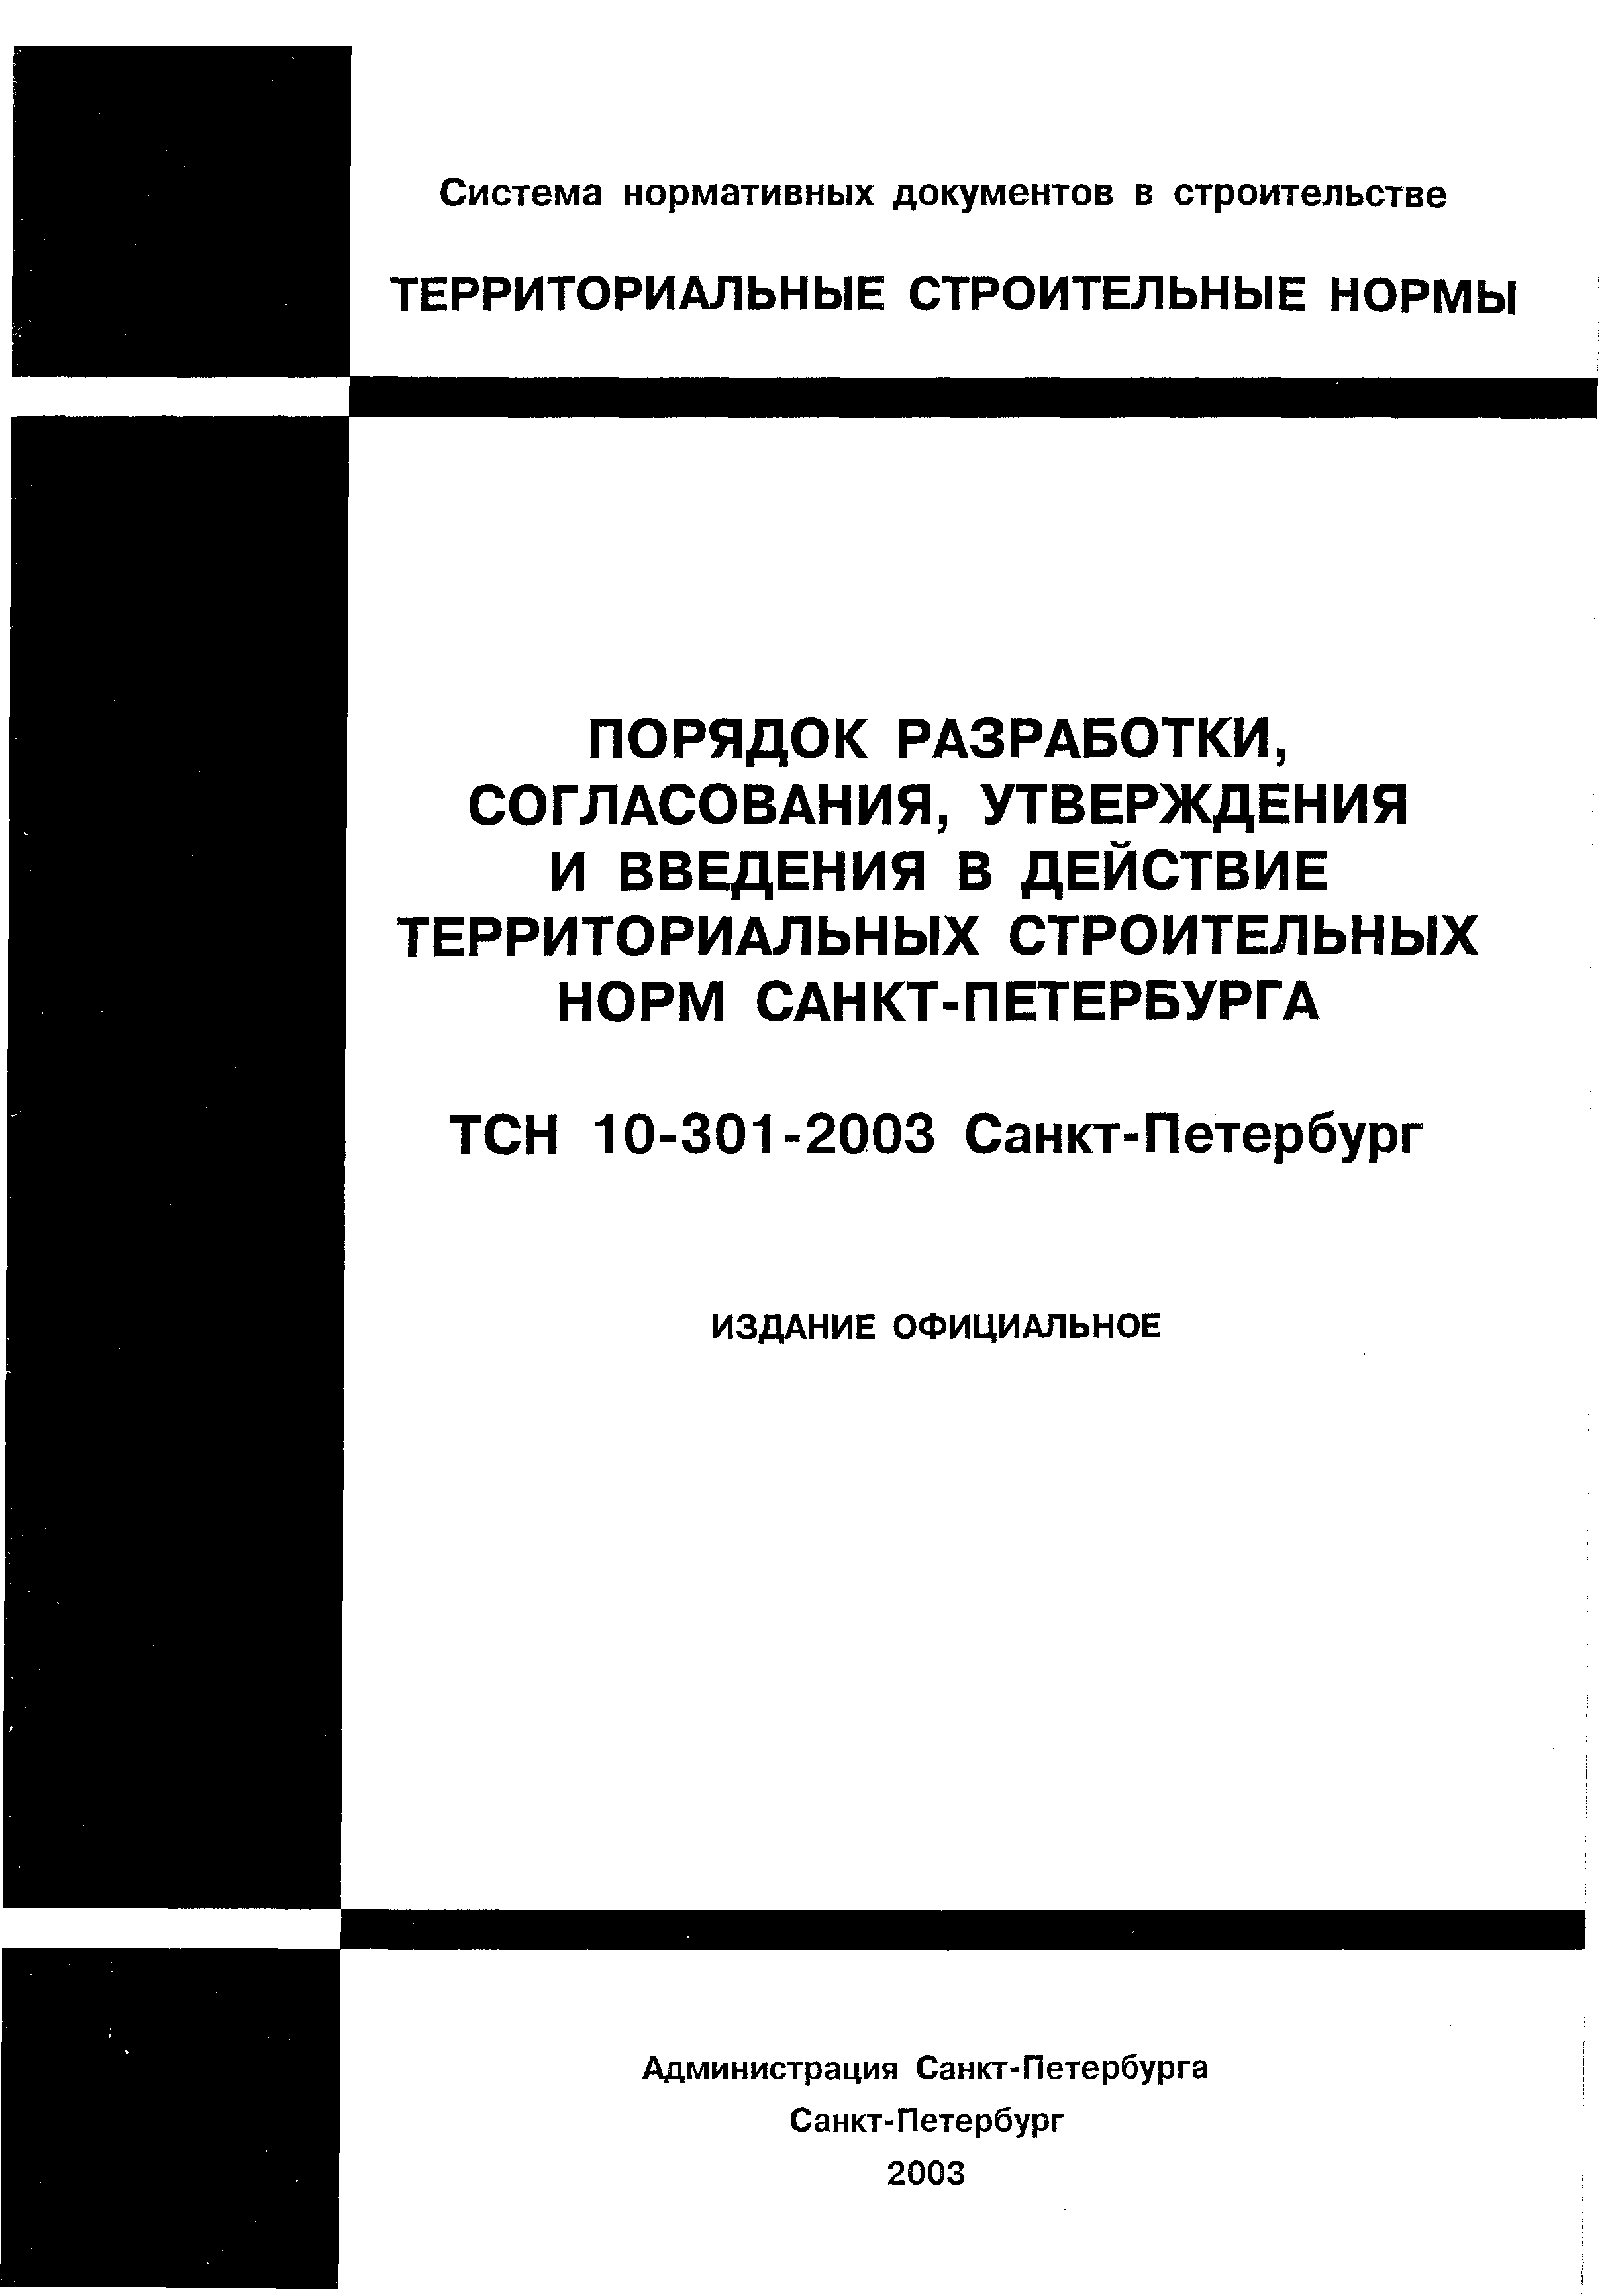 ТСН 10-301-2003